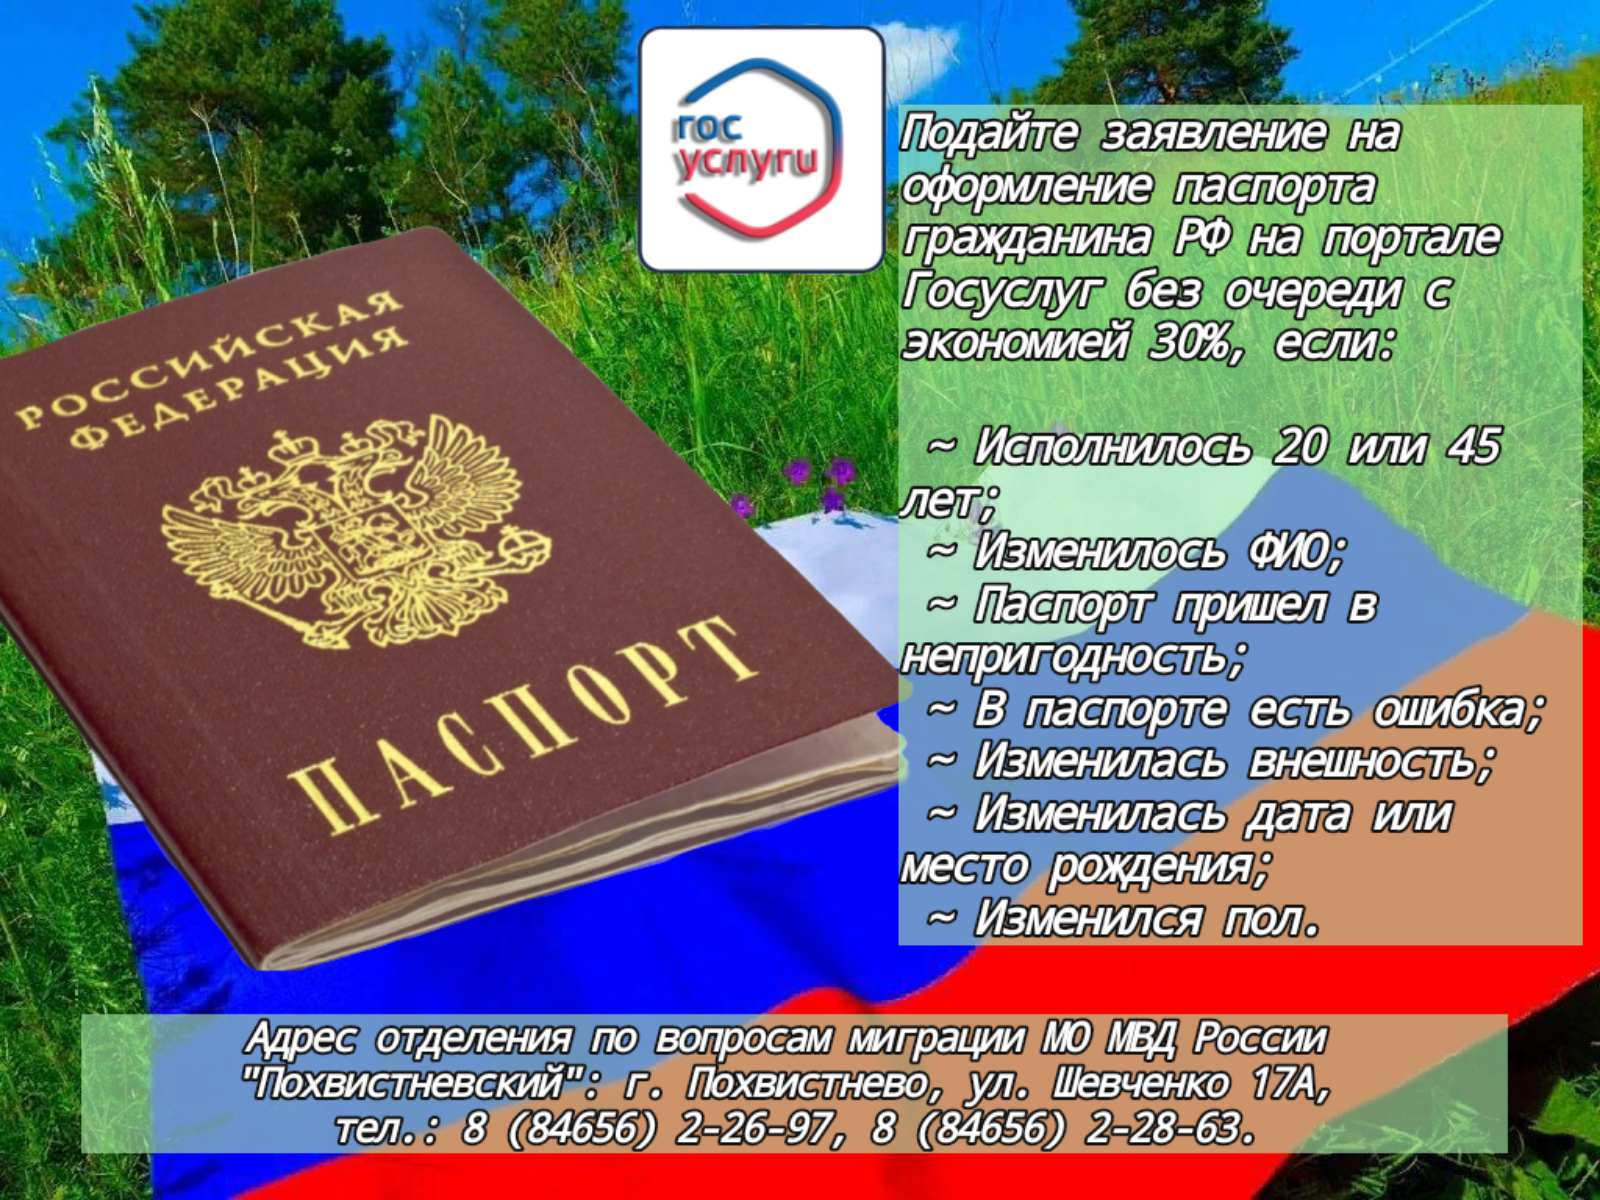 Документ удостоверяющий личность на территории РФ.